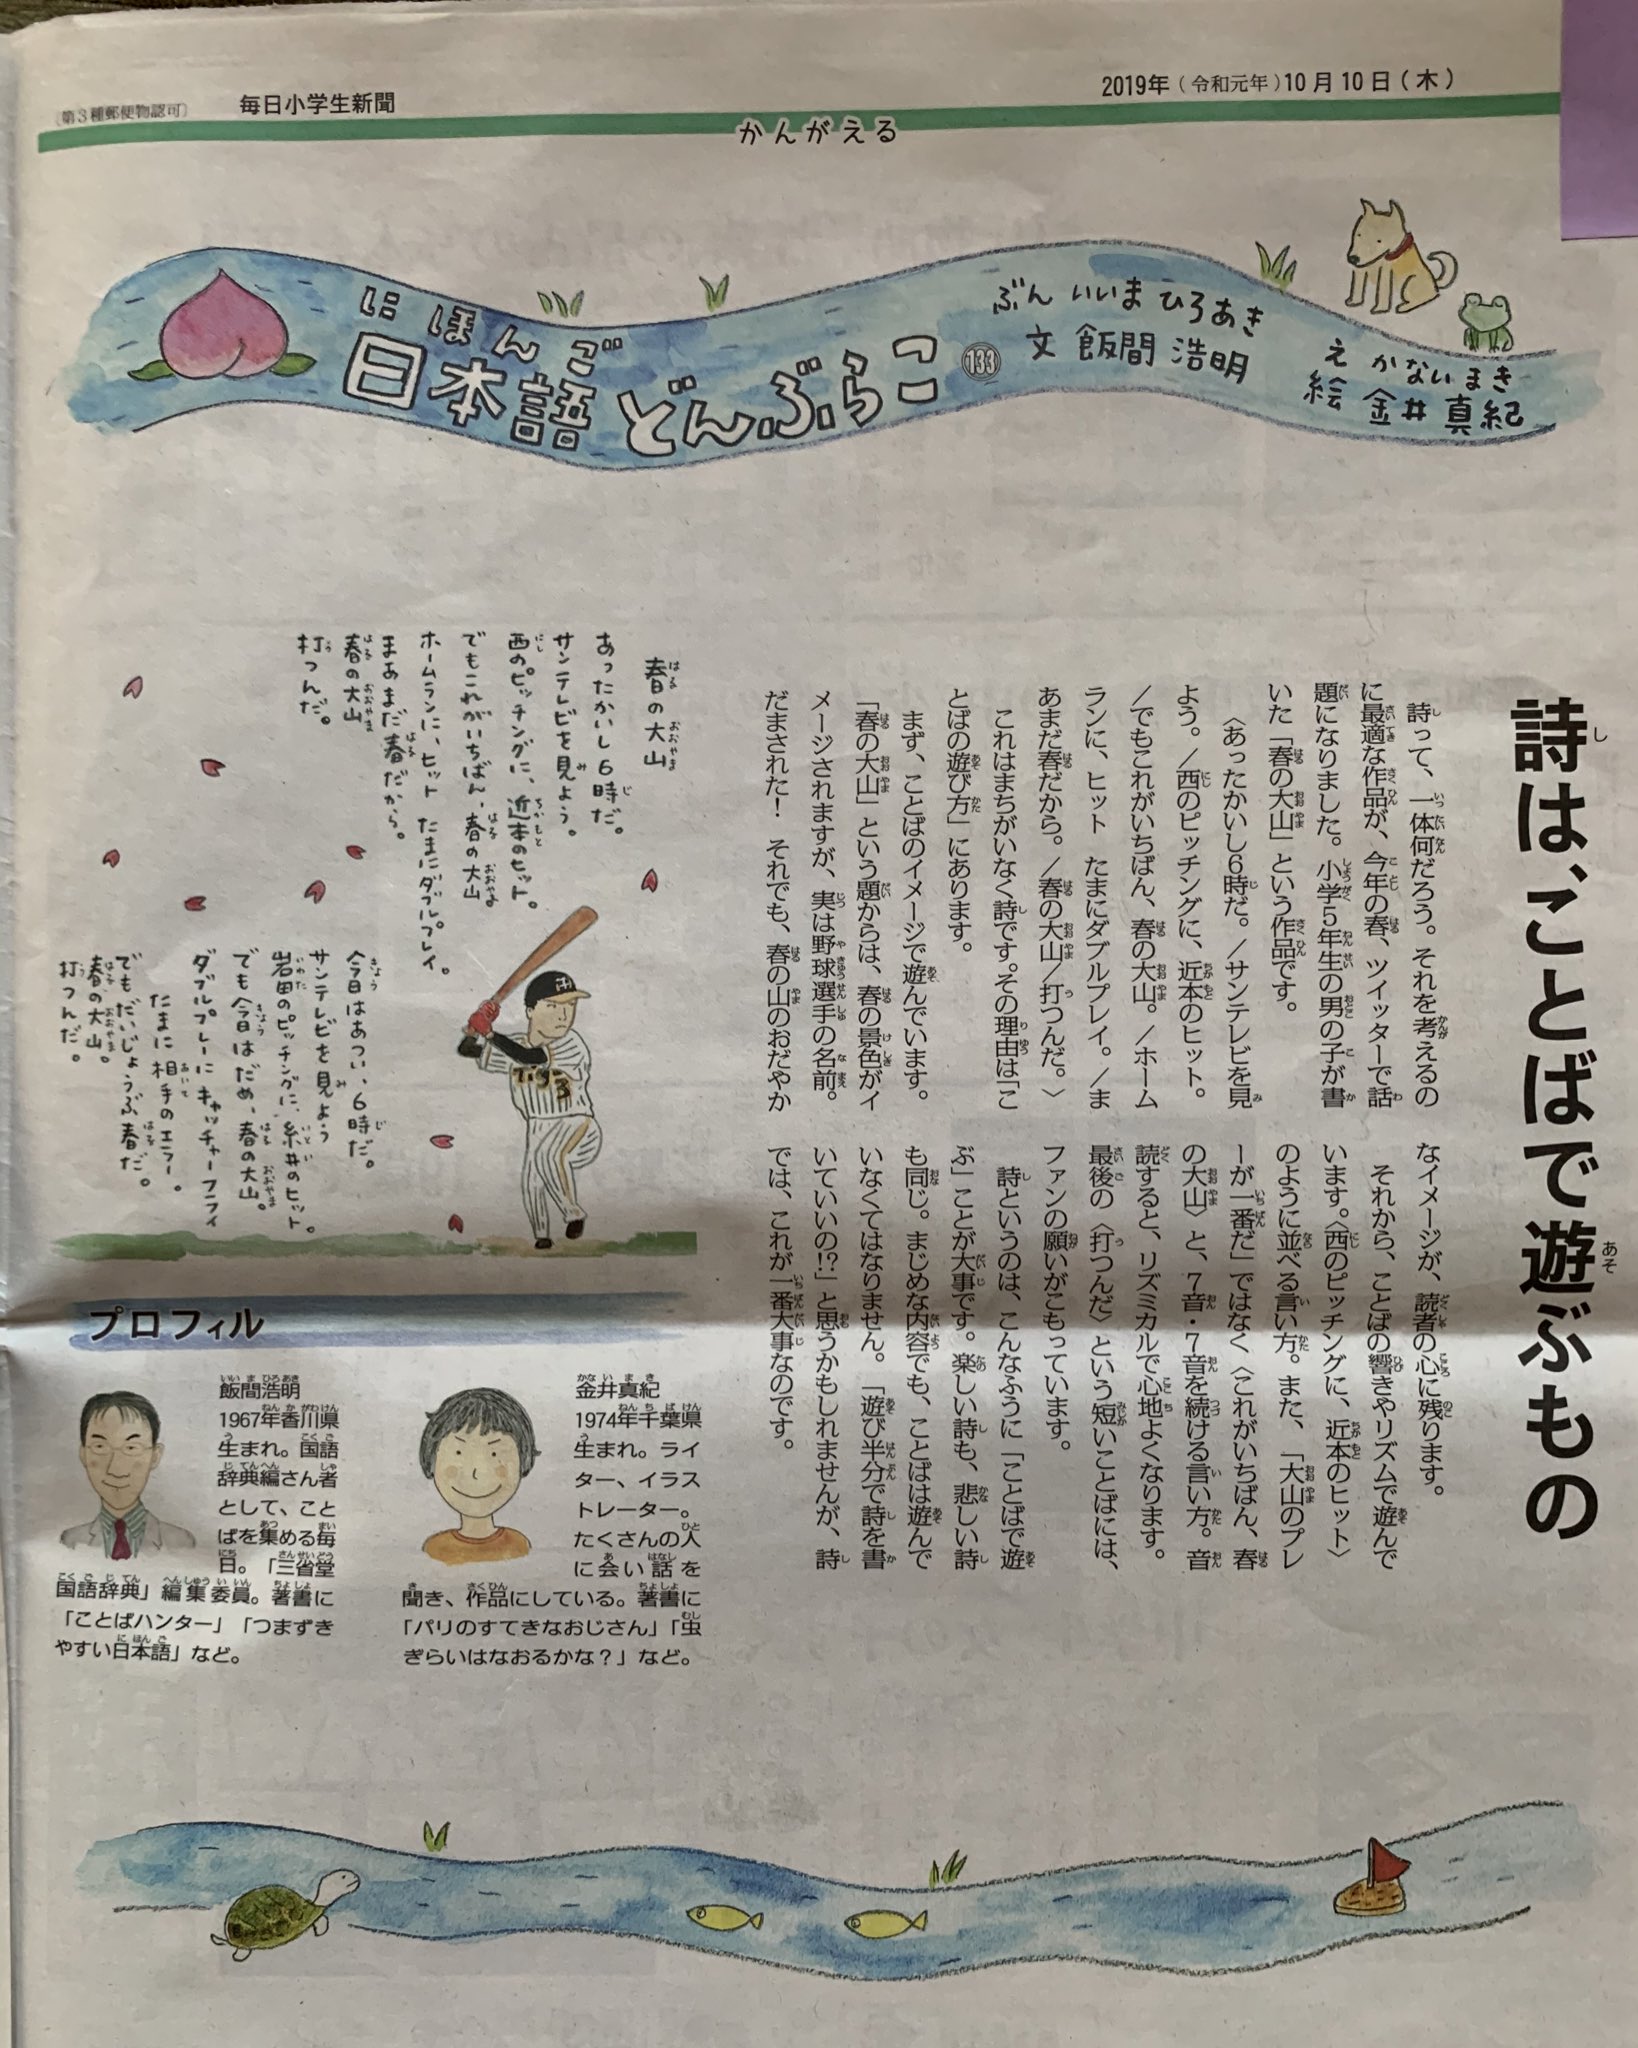 アコマン Twitter पर 毎日小学生新聞の日本語のコーナーで 春の大山の詩を引用してくれたうえに褒めてくれてる 大山の絵がちょっと似てて可愛いww T Co Pz7qqhqd1g Twitter